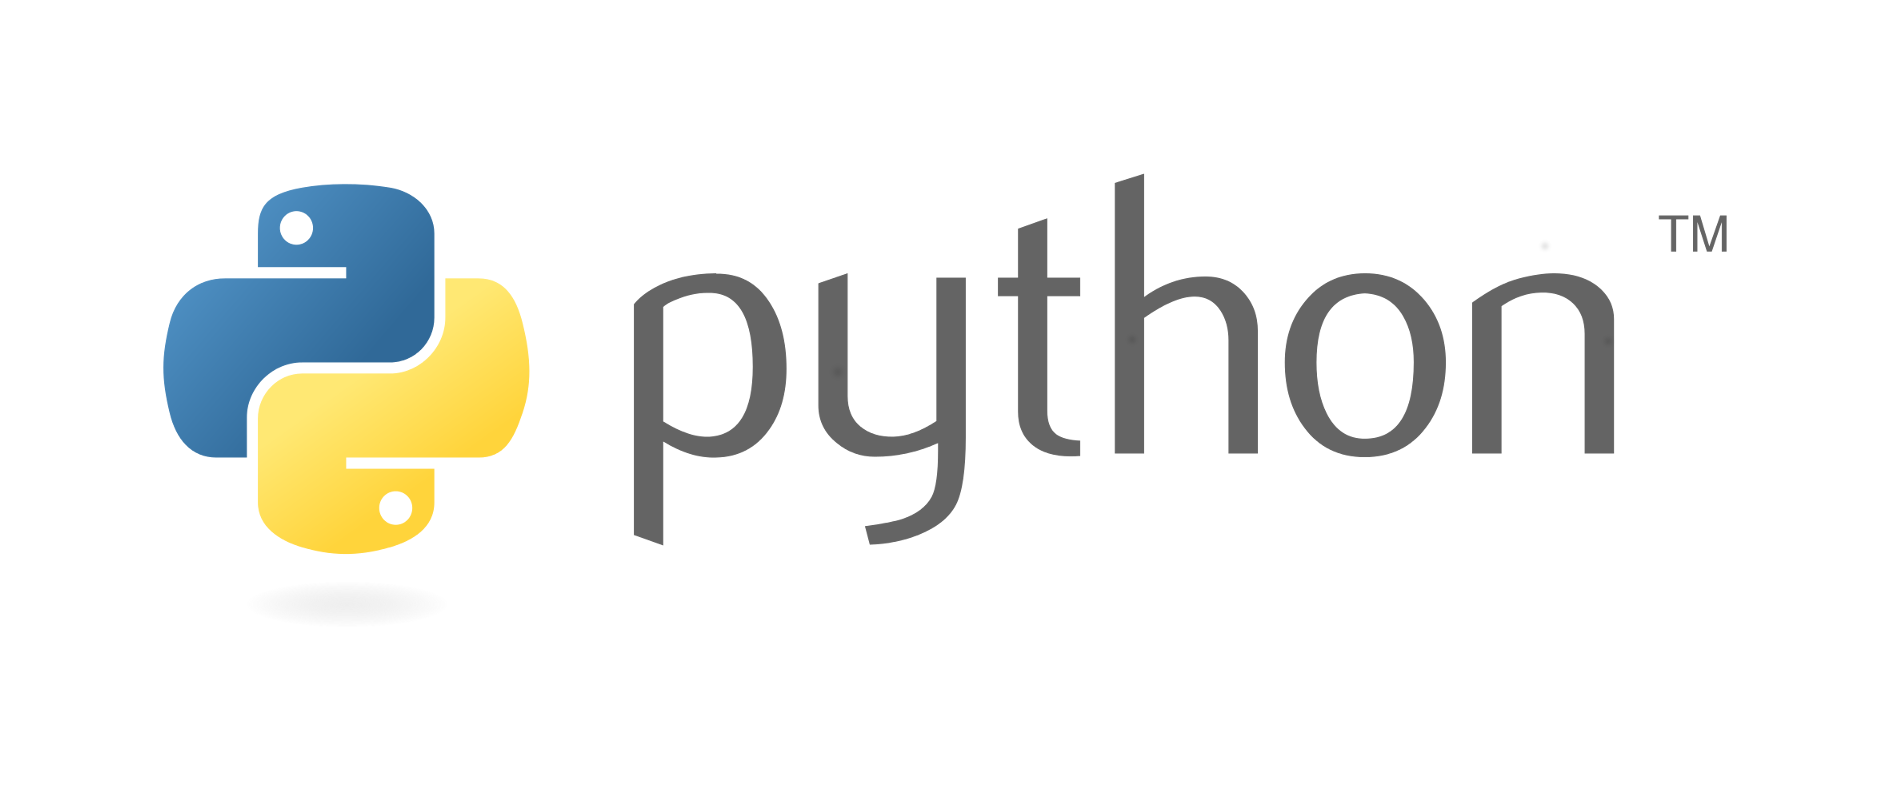 pythonで外部ファイルを読み込んで更にヒアドキュメント内で変数を使う方法